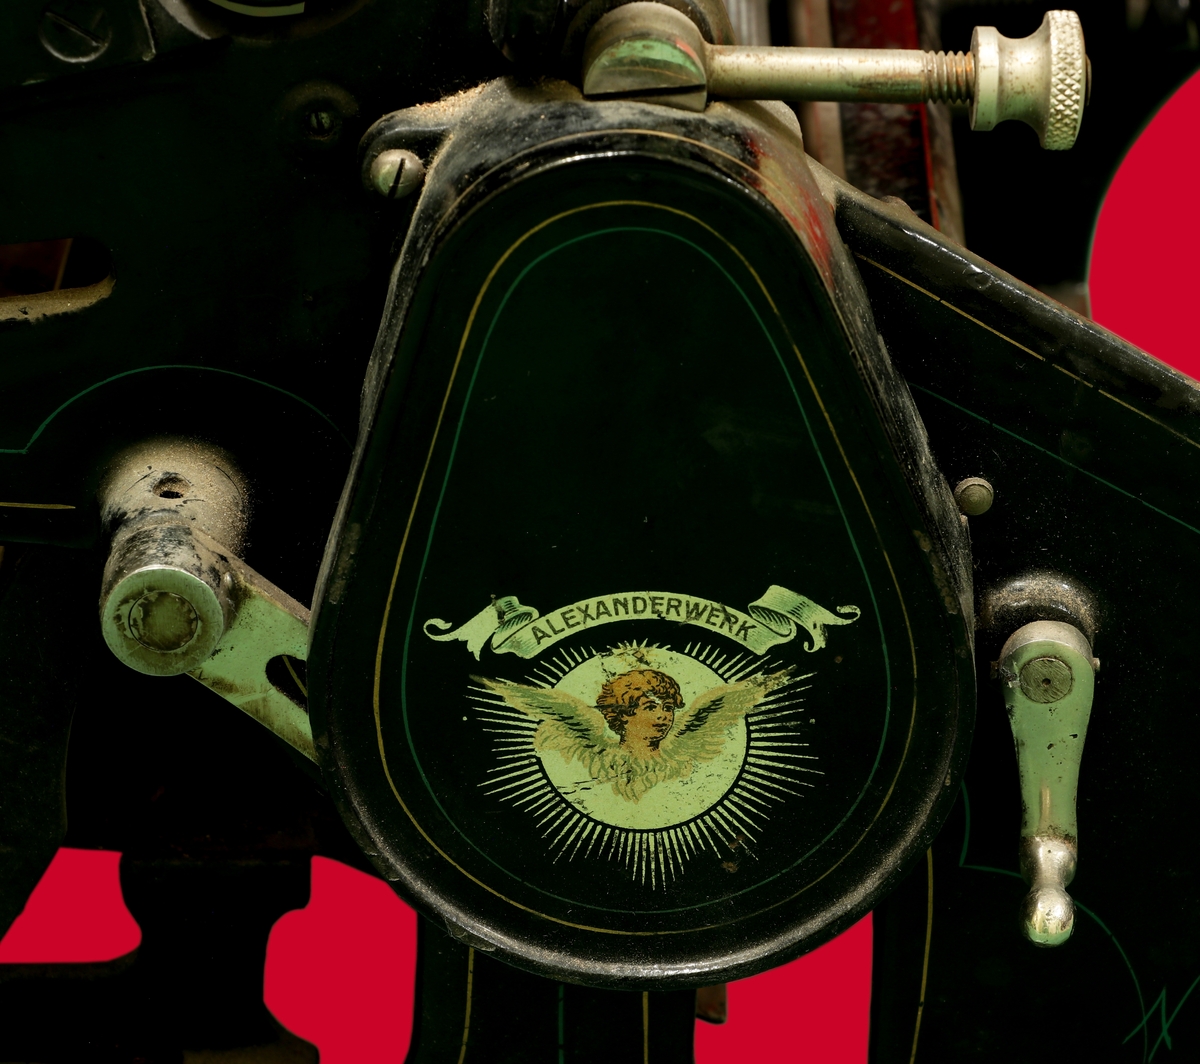 Kopieringsmaskin i svartmålad metall med dekorlinjer målade i guld och grönt. På vänster sida en logga där det står Alexanderwerk och under det en ängel. På vänster sida också en spak i vitmetall. På ovansidan en platt skiva, under den en räfflad rulle. På höger sida en ett vrede med handtag i svartmålat trä.